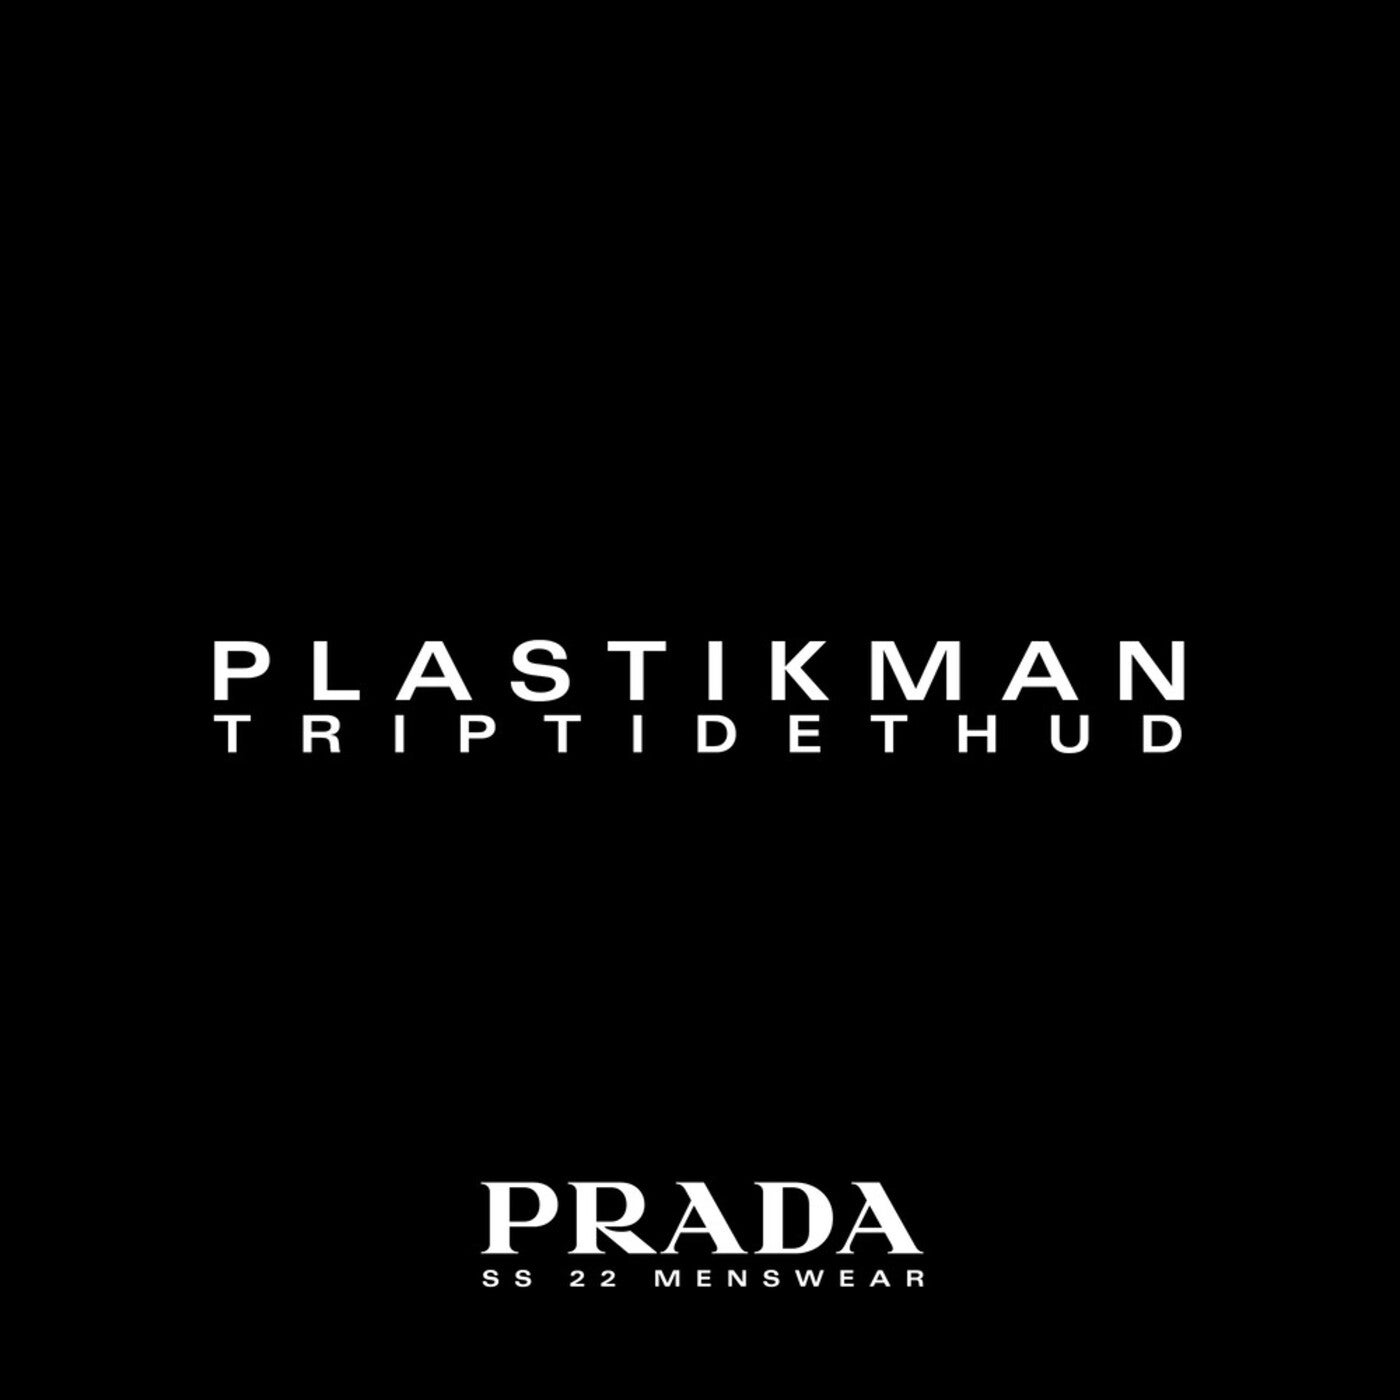 Plastikman, Richie Hawtin - TripTideThud (Prada SS22 Menswear Version) [FOM03]